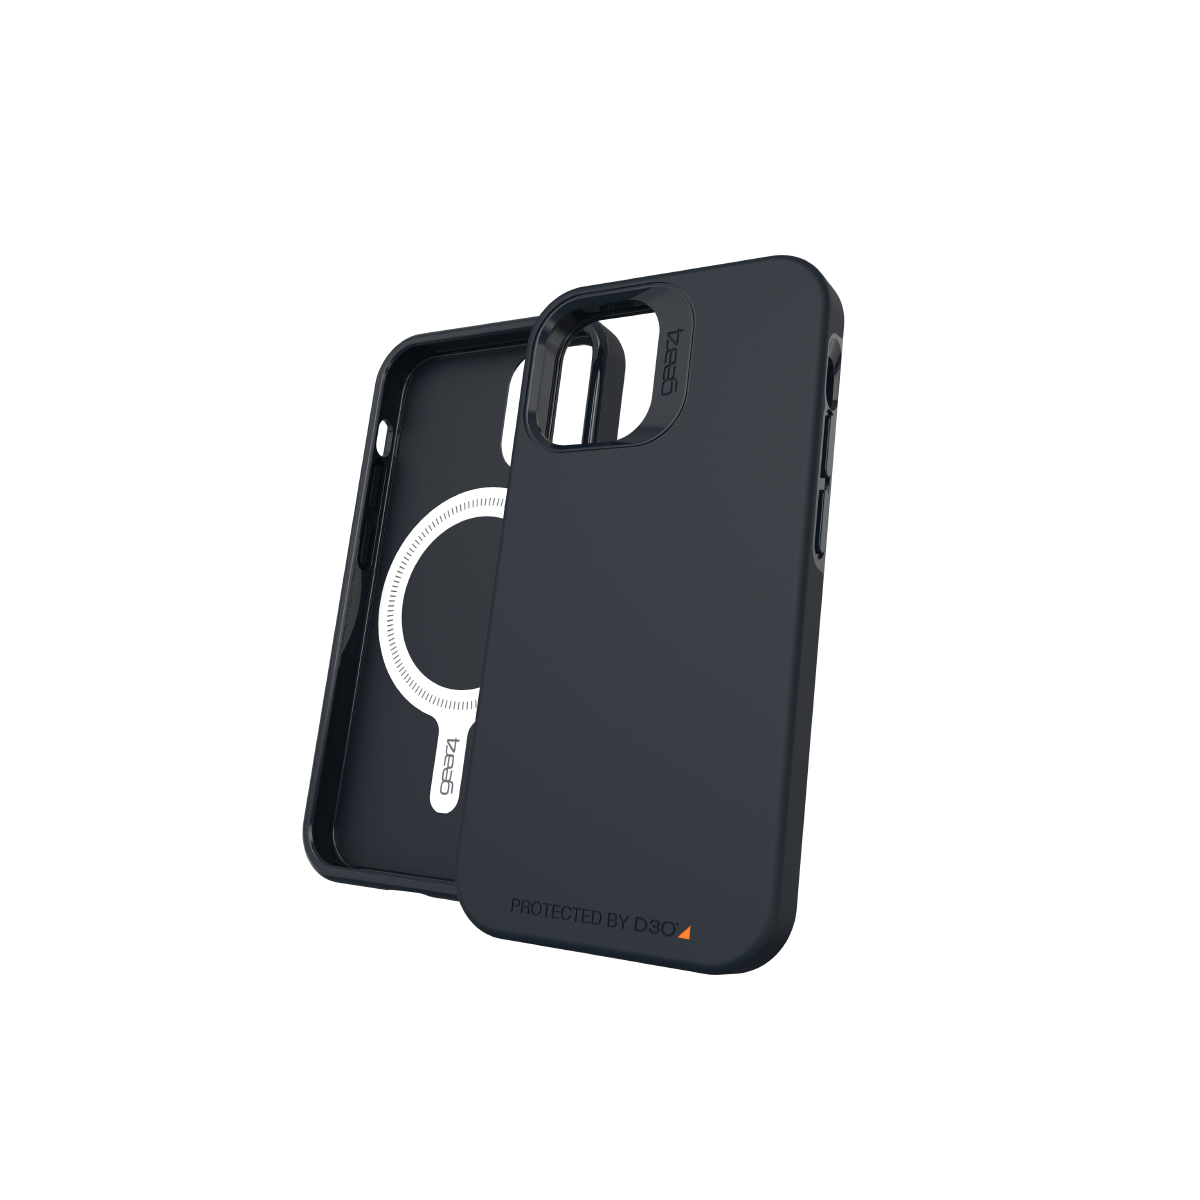 Ốp lưng chống sốc Gear4 D3O Rio Snap 4m hỗ trợ sạc Magsafe cho iPhone 12 mini/12/12 Pro/12 Pro Max - Hàng chính hãng